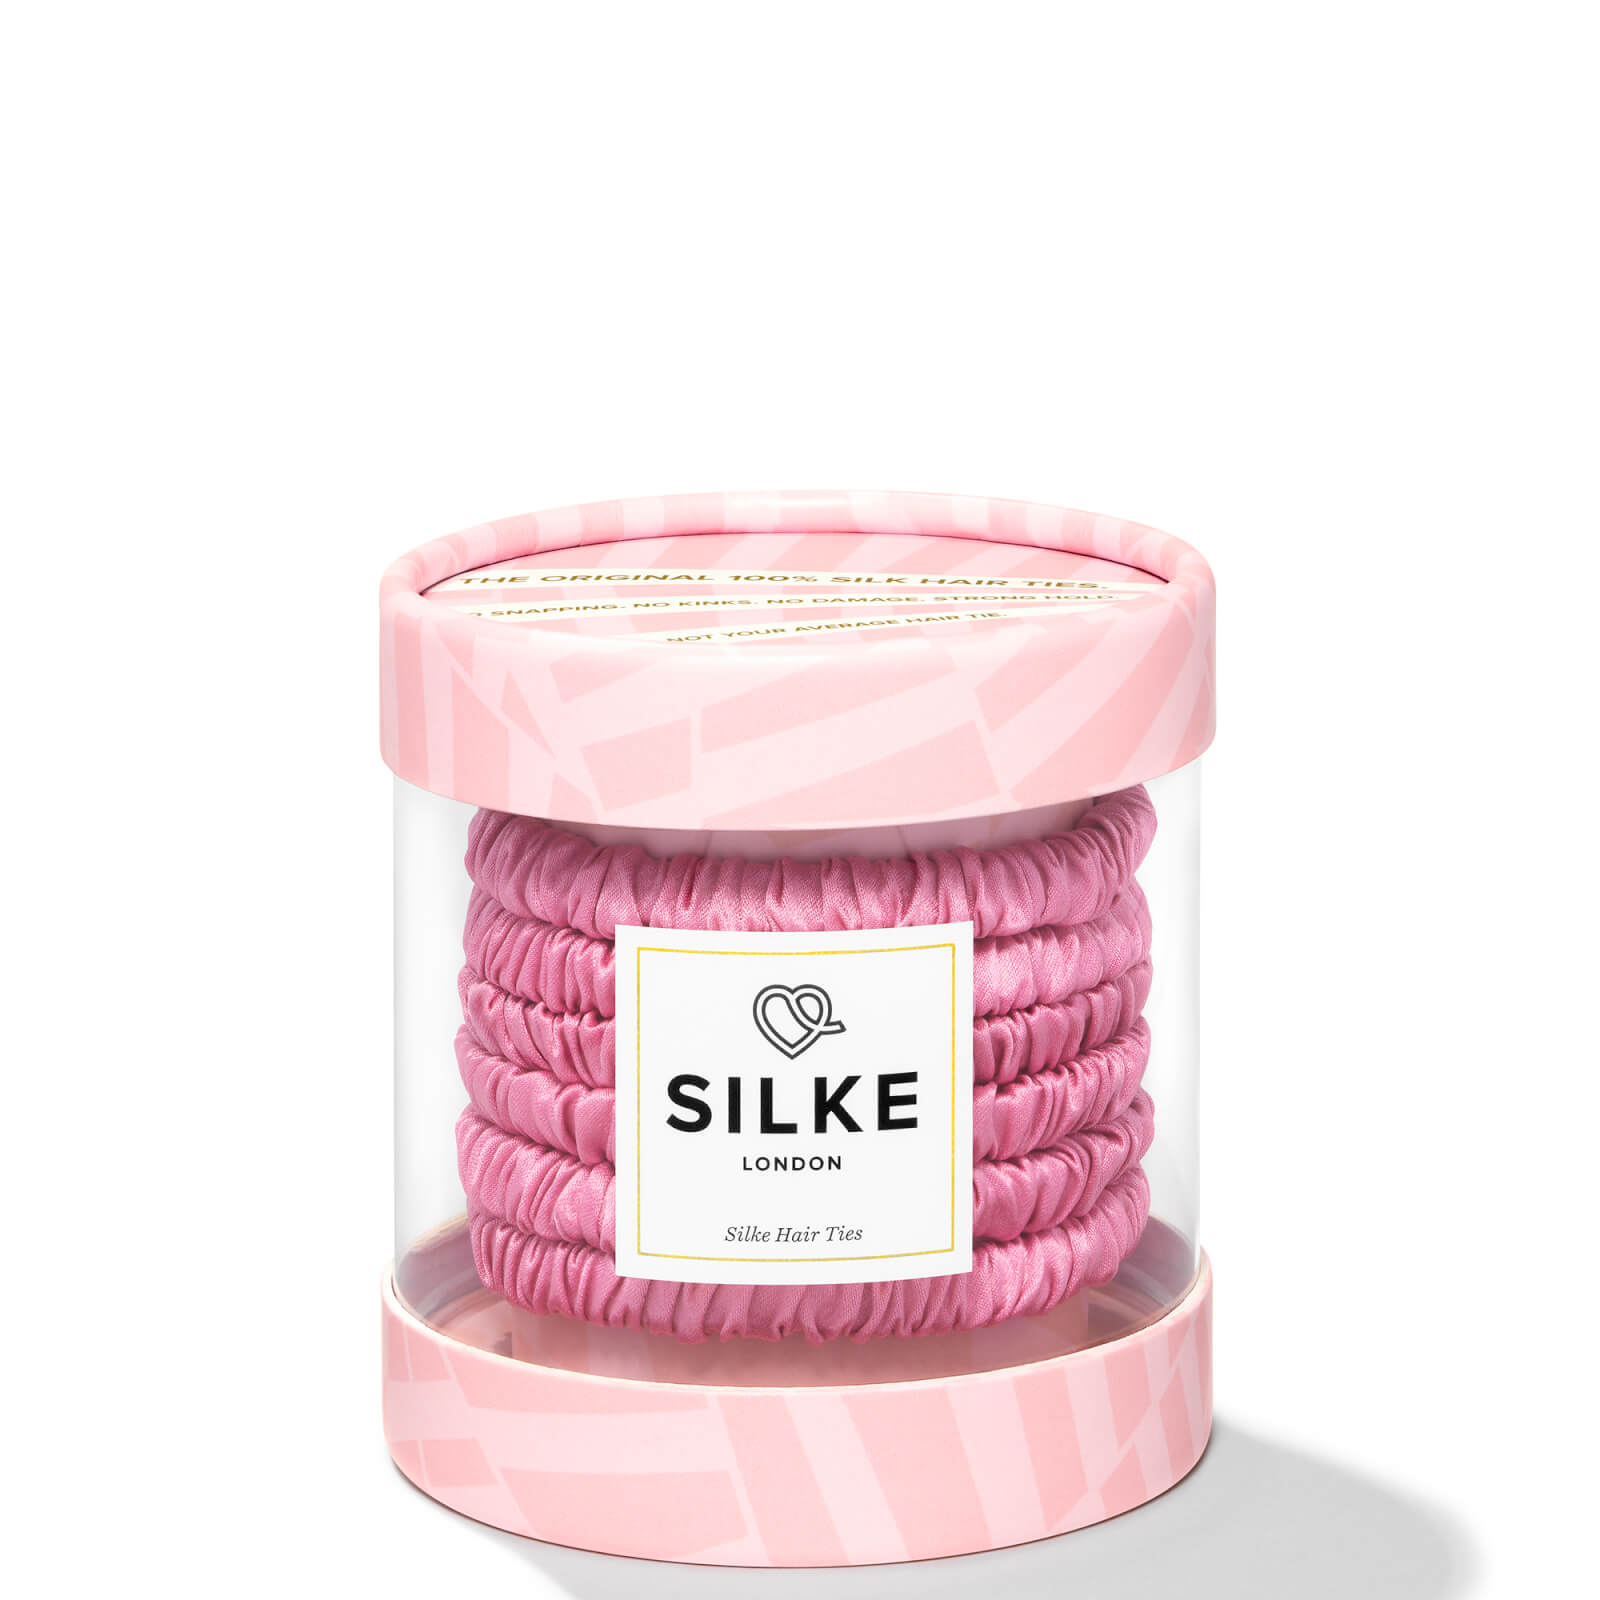 Silke London Hair Ties - Blossom In Pink